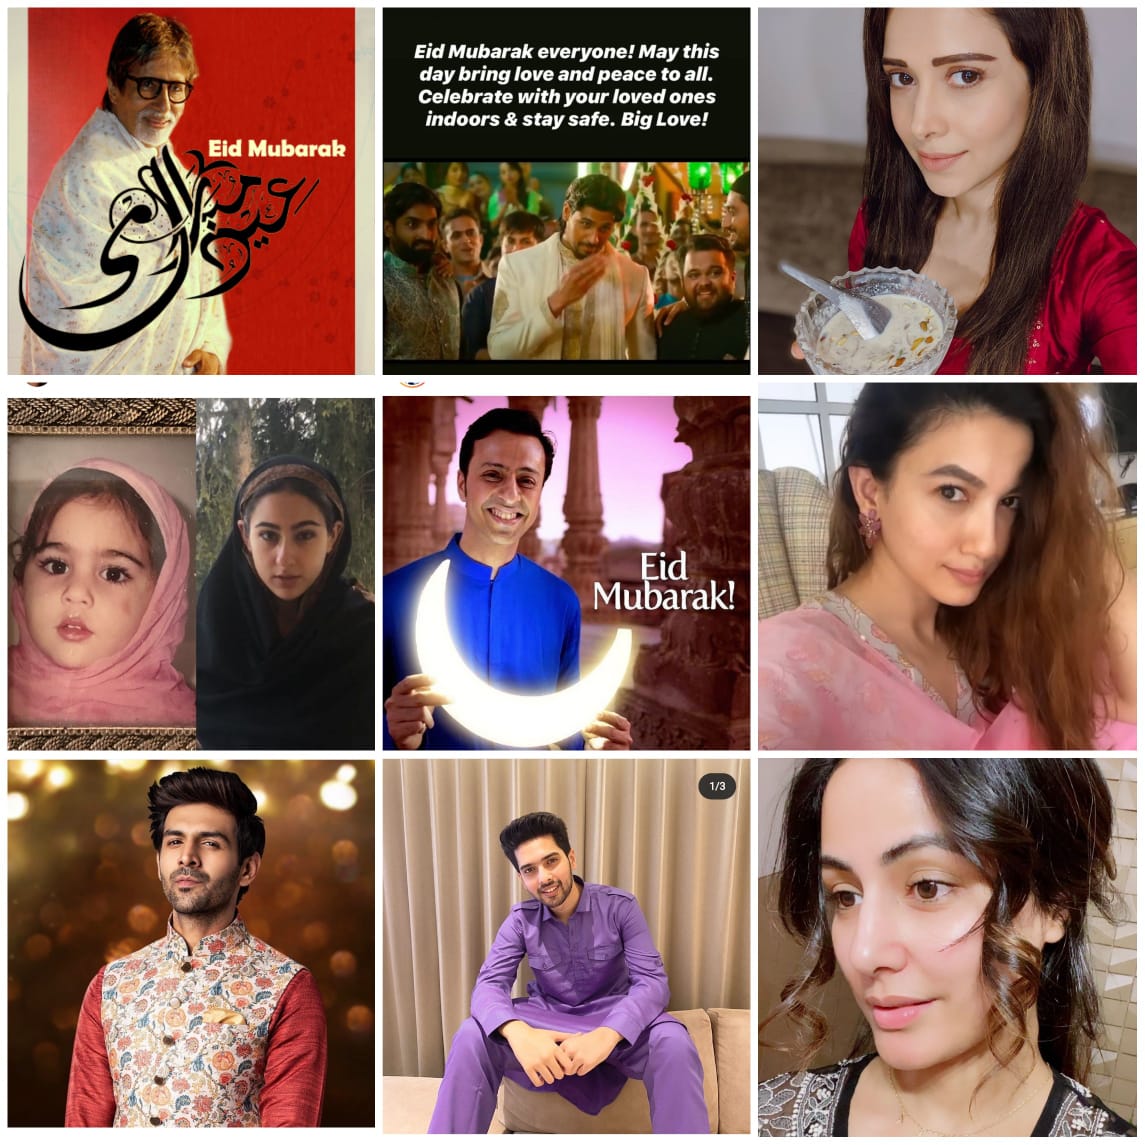 Celebrities wishing Eid Mubarak